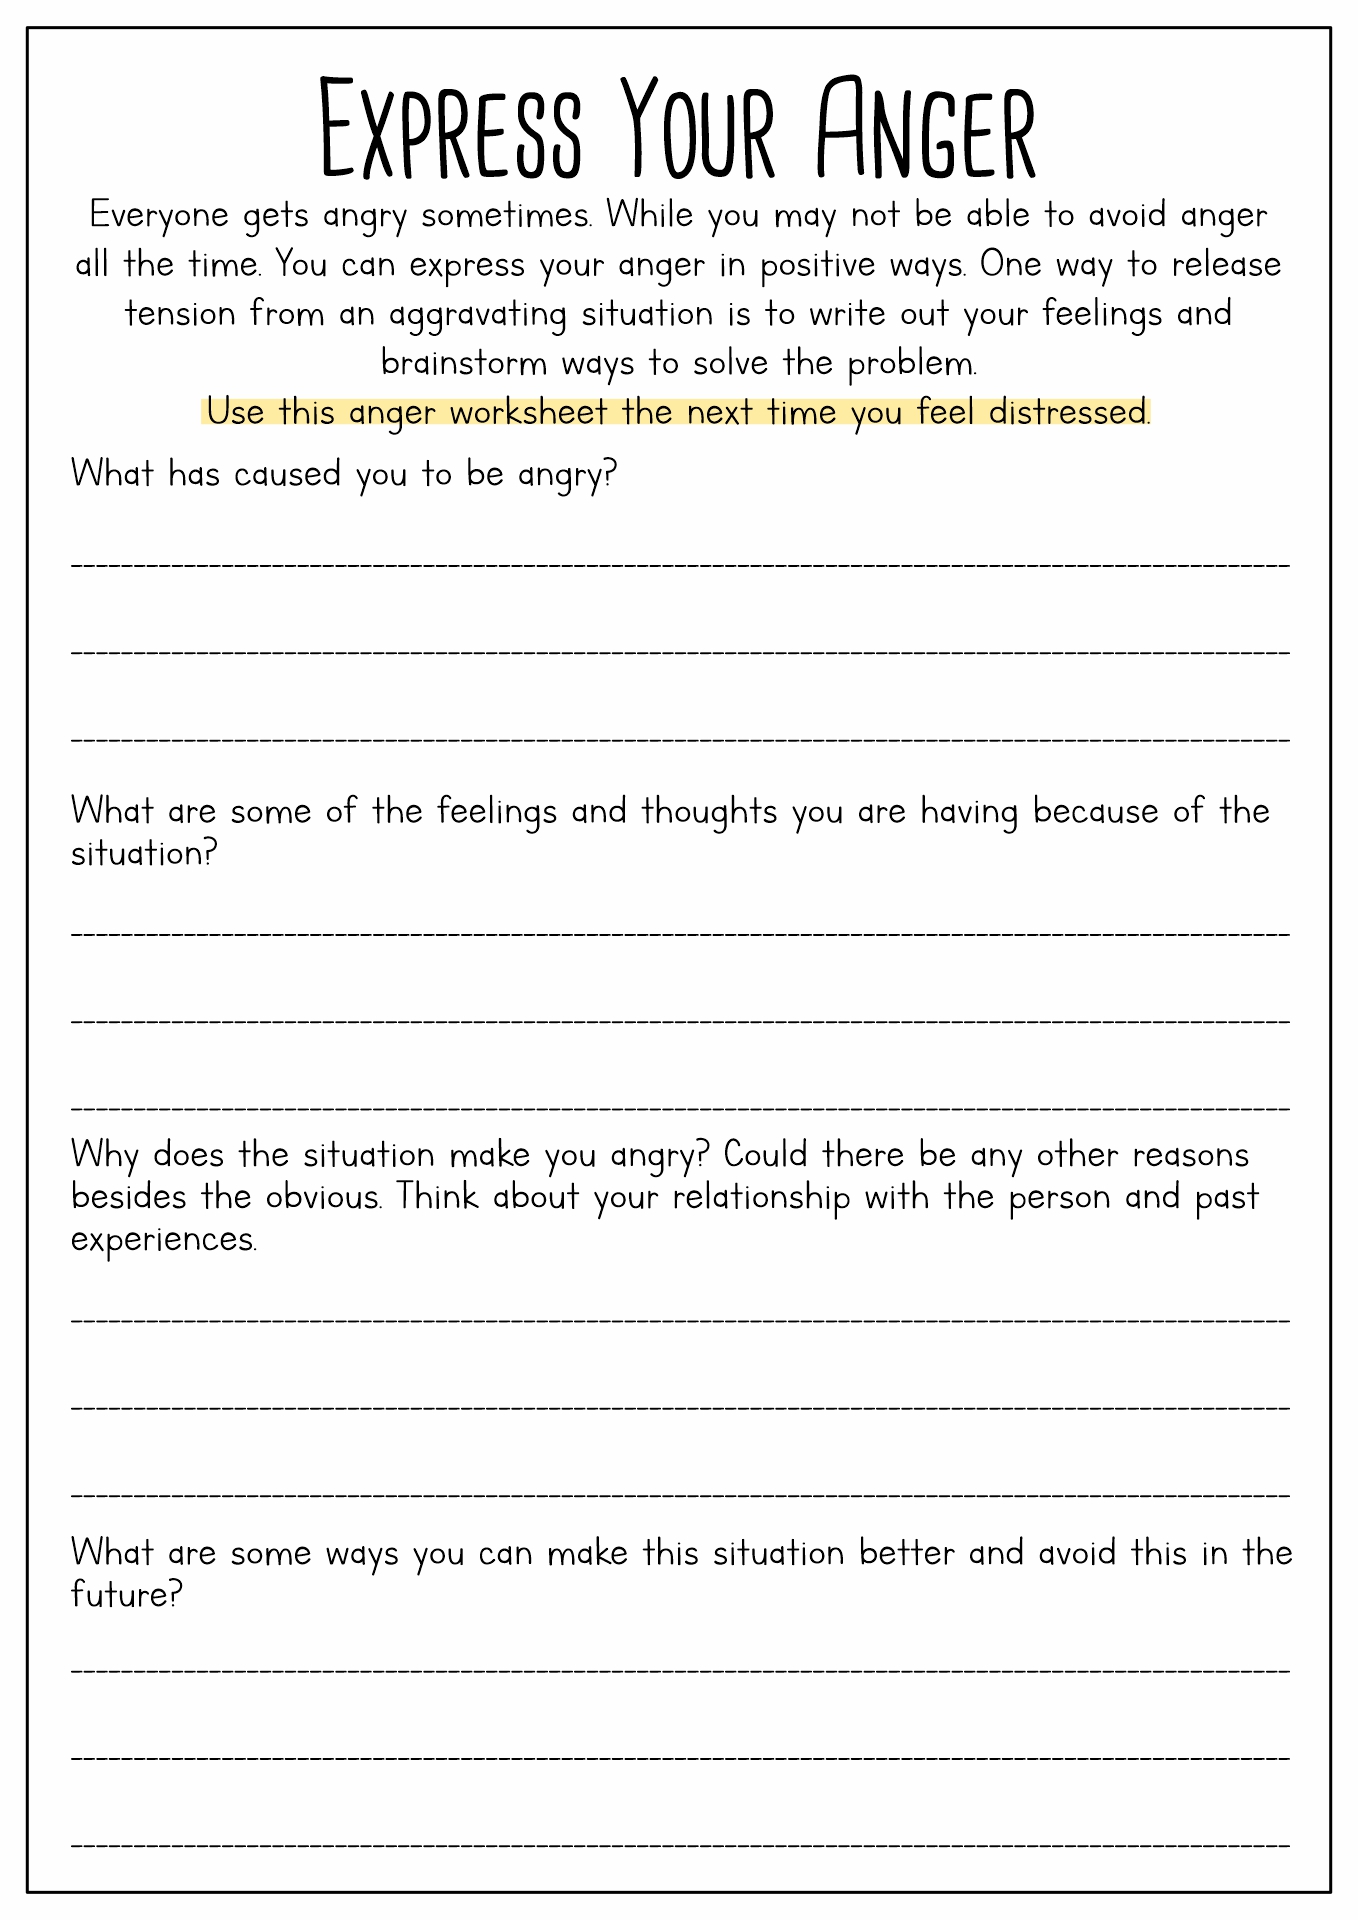 19 Best Images of Anger Worksheets For Adults  Anger Management Skills Worksheet, Anger 